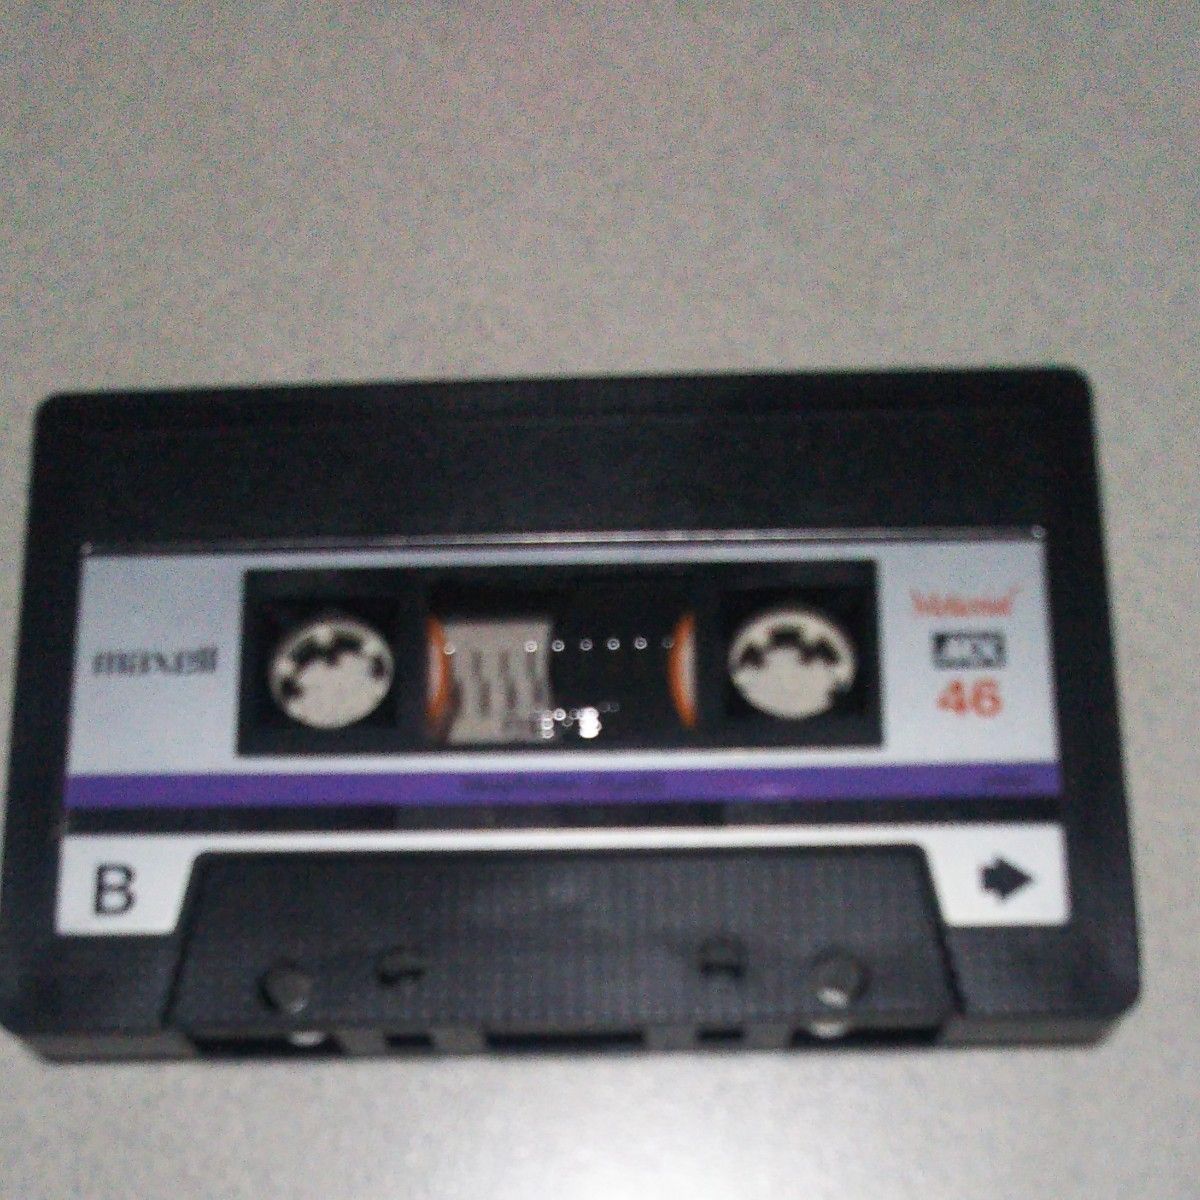 超希少マクセルメタルカセットテープMX46中古品1巻ジャンク